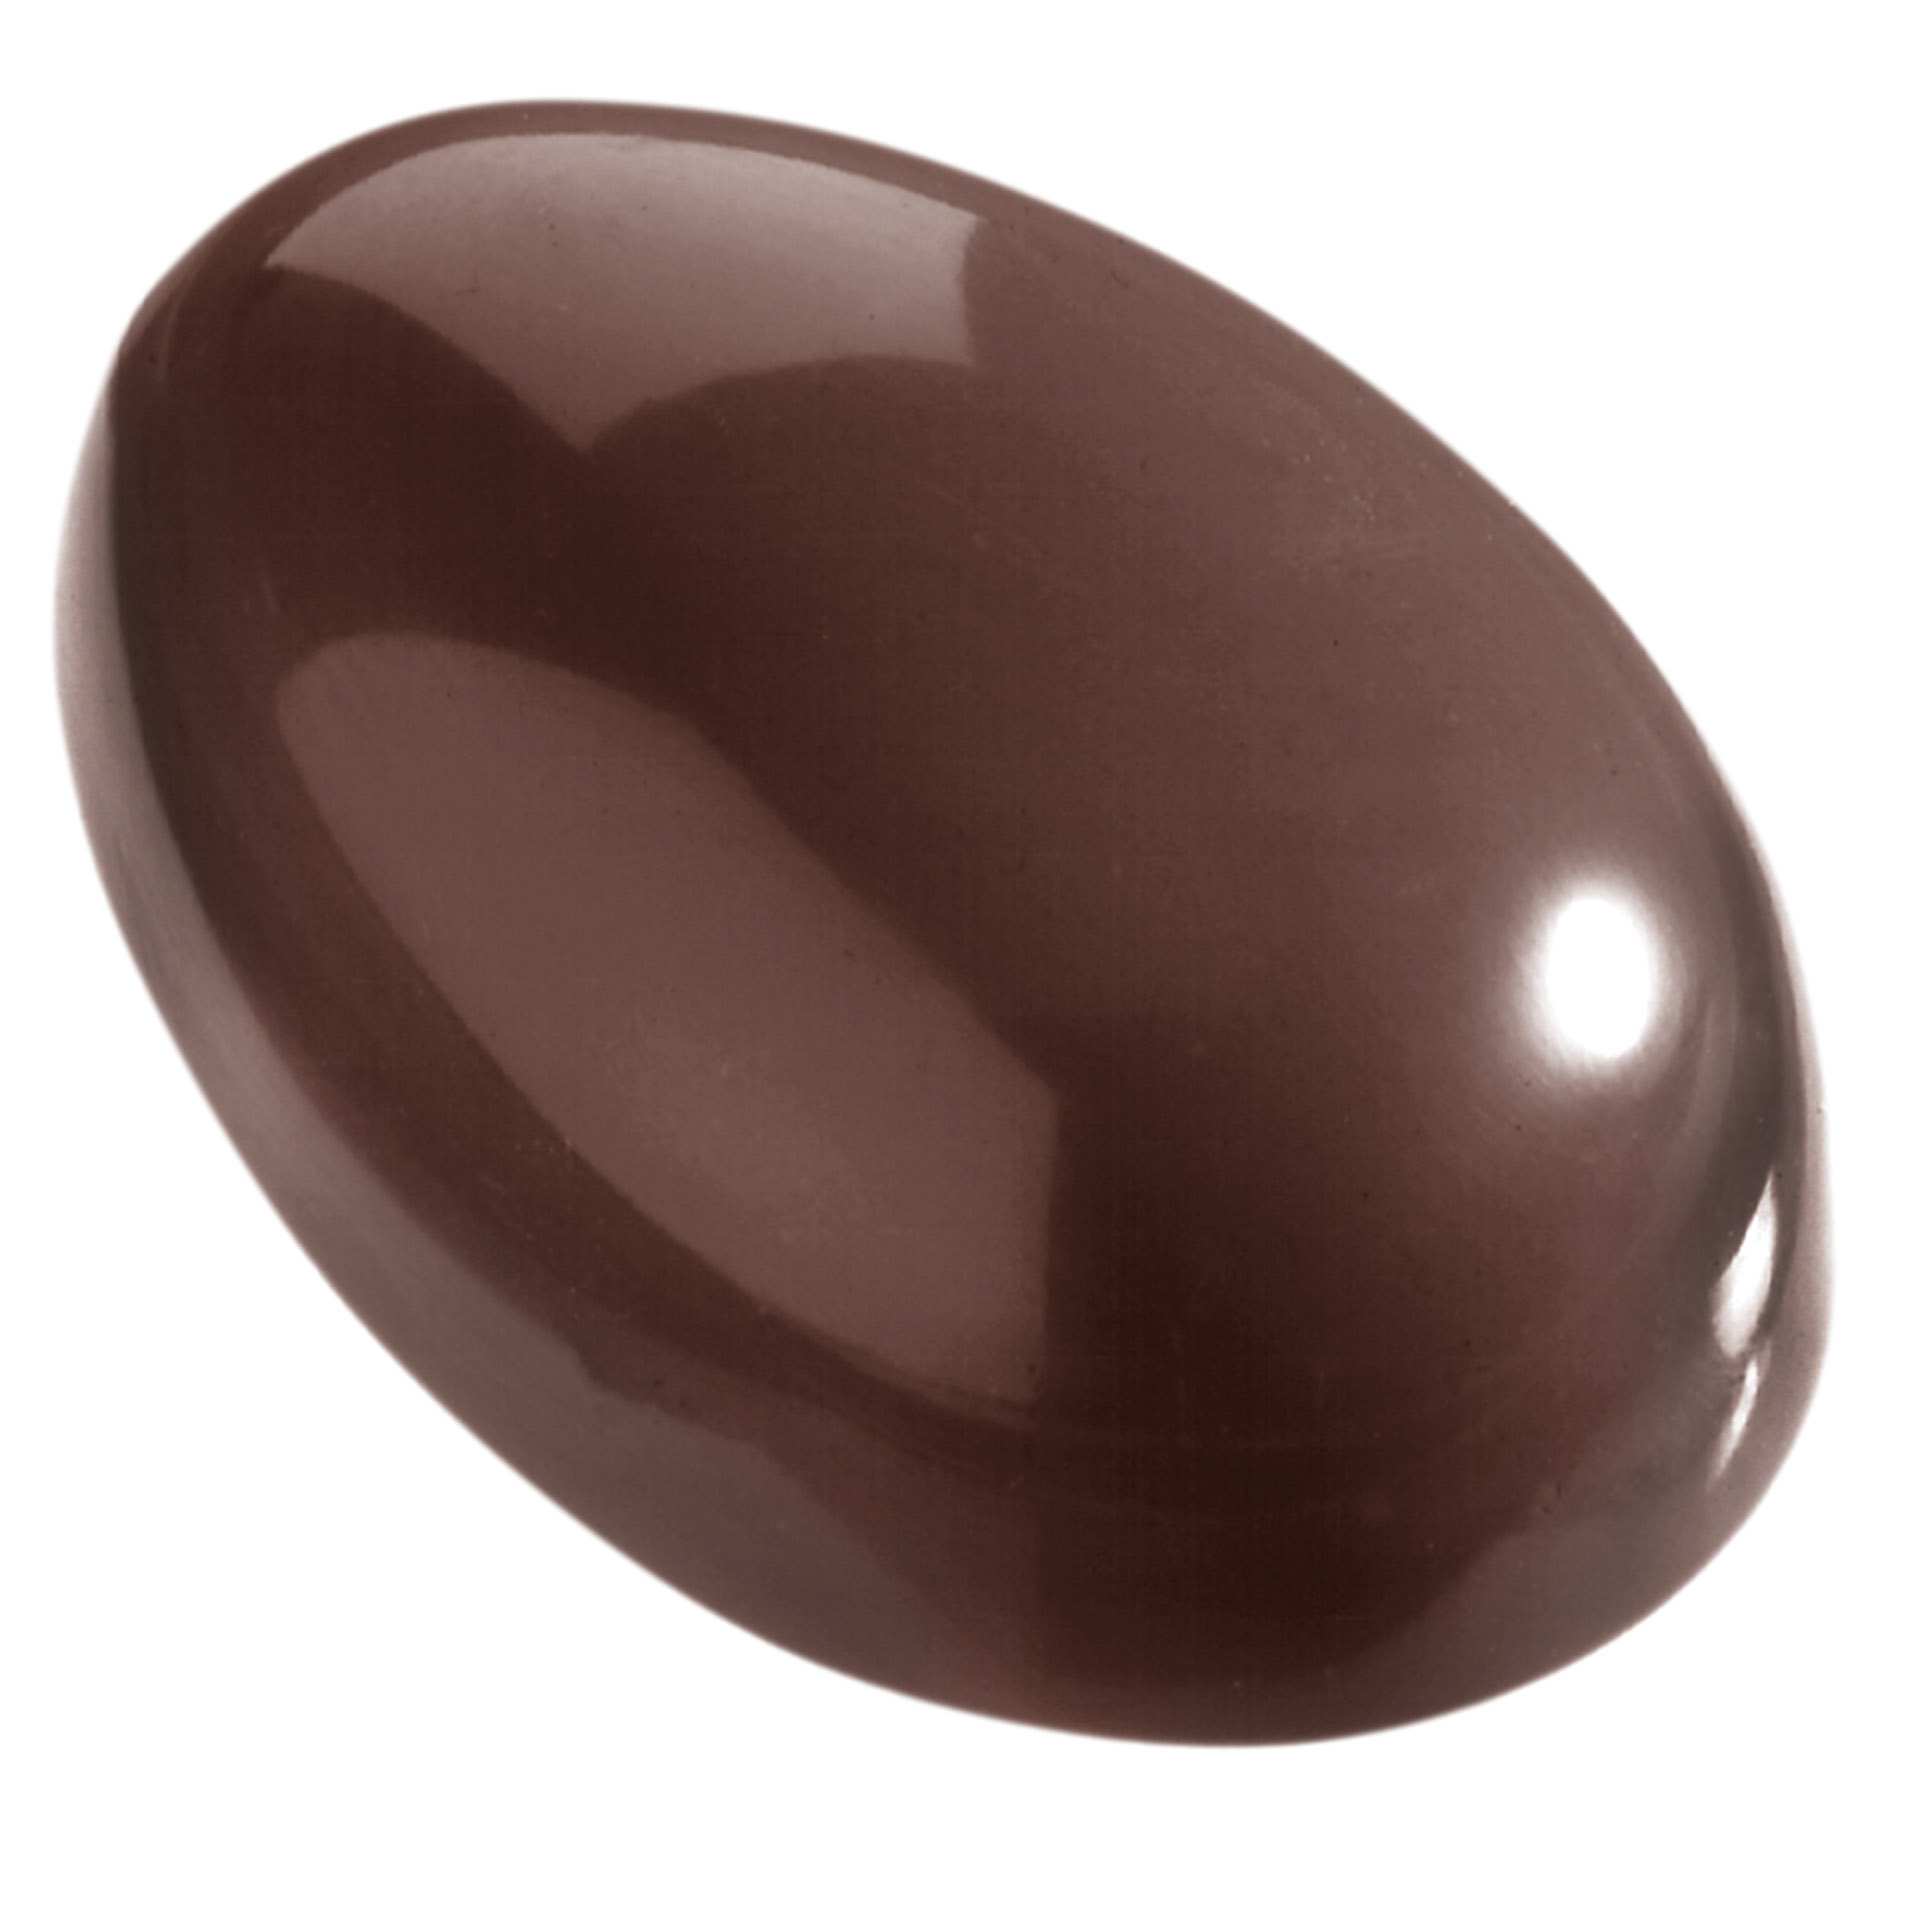 Schokoladen-Form - Ei glatt - Abm. 27,5 x 13,5 x 2,4 cm - Polycarbonat - 421317-C